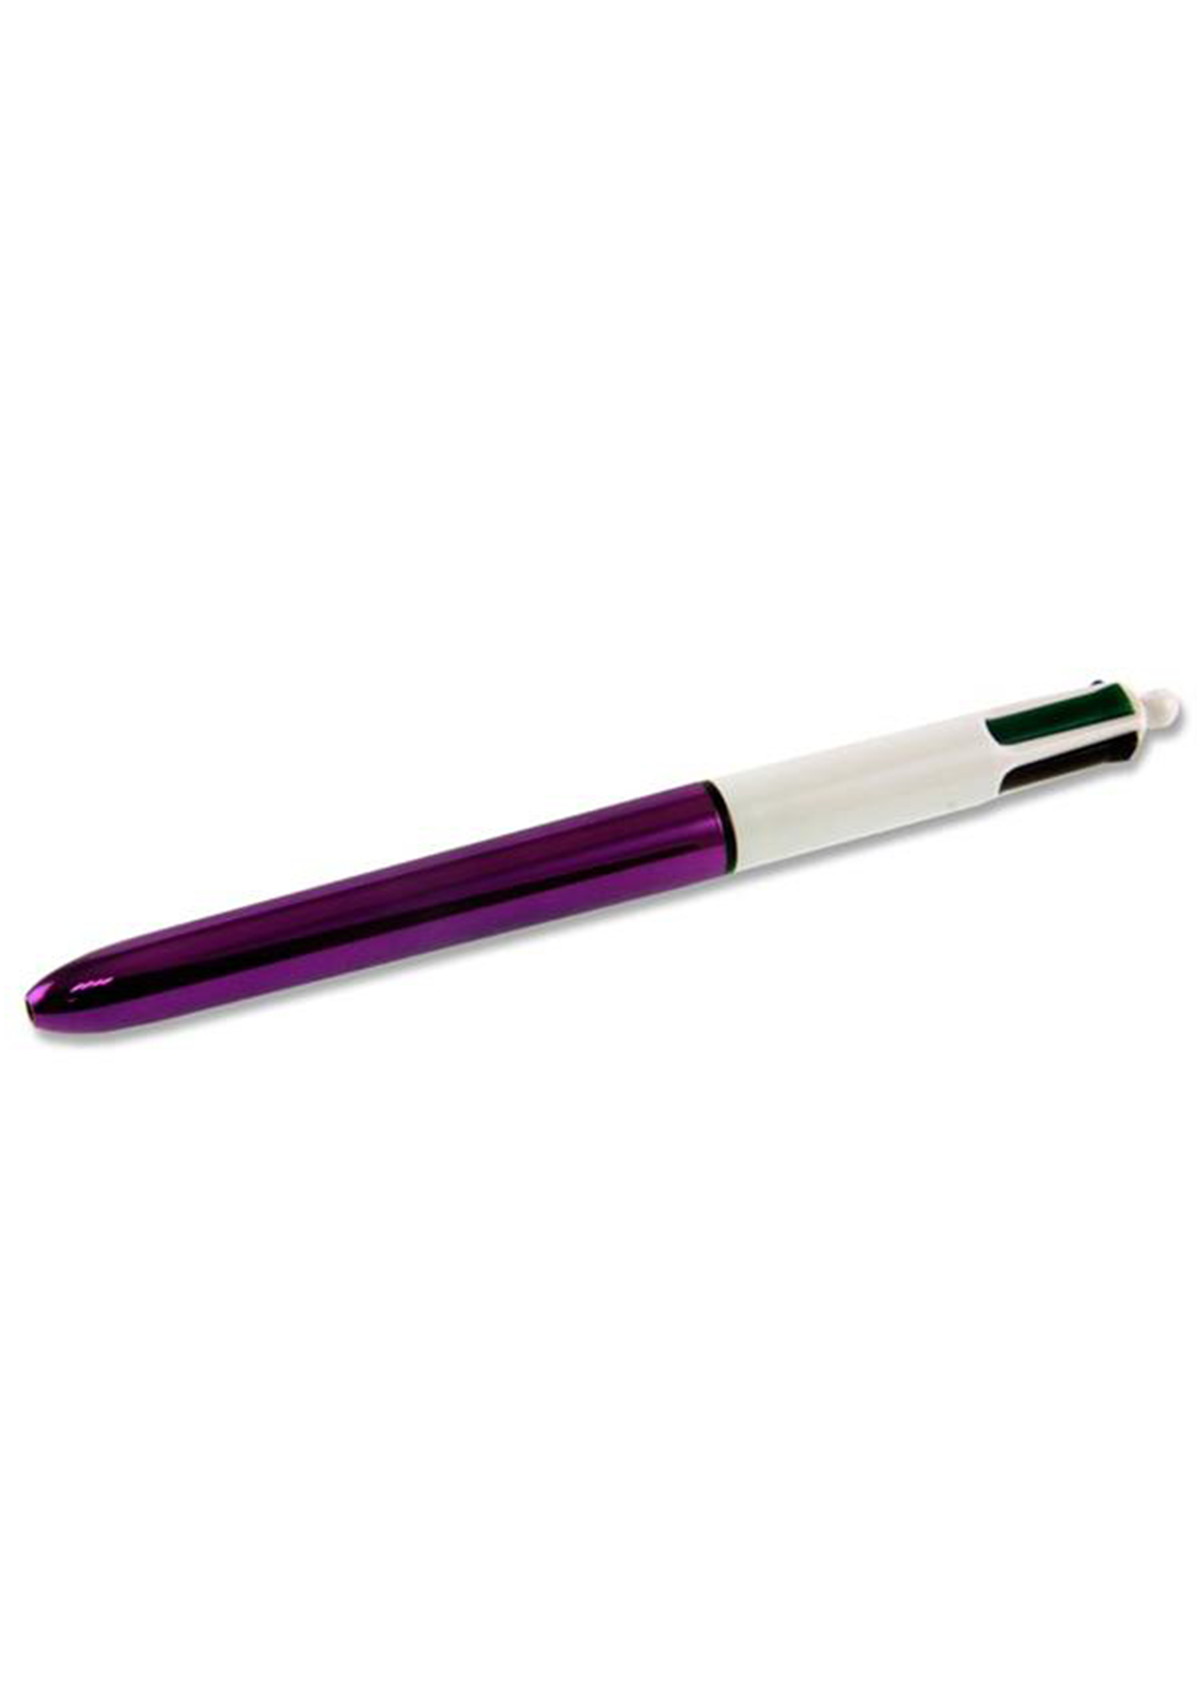 4 Colour Ballpoint Pen - Shine 4 Asst Cdu